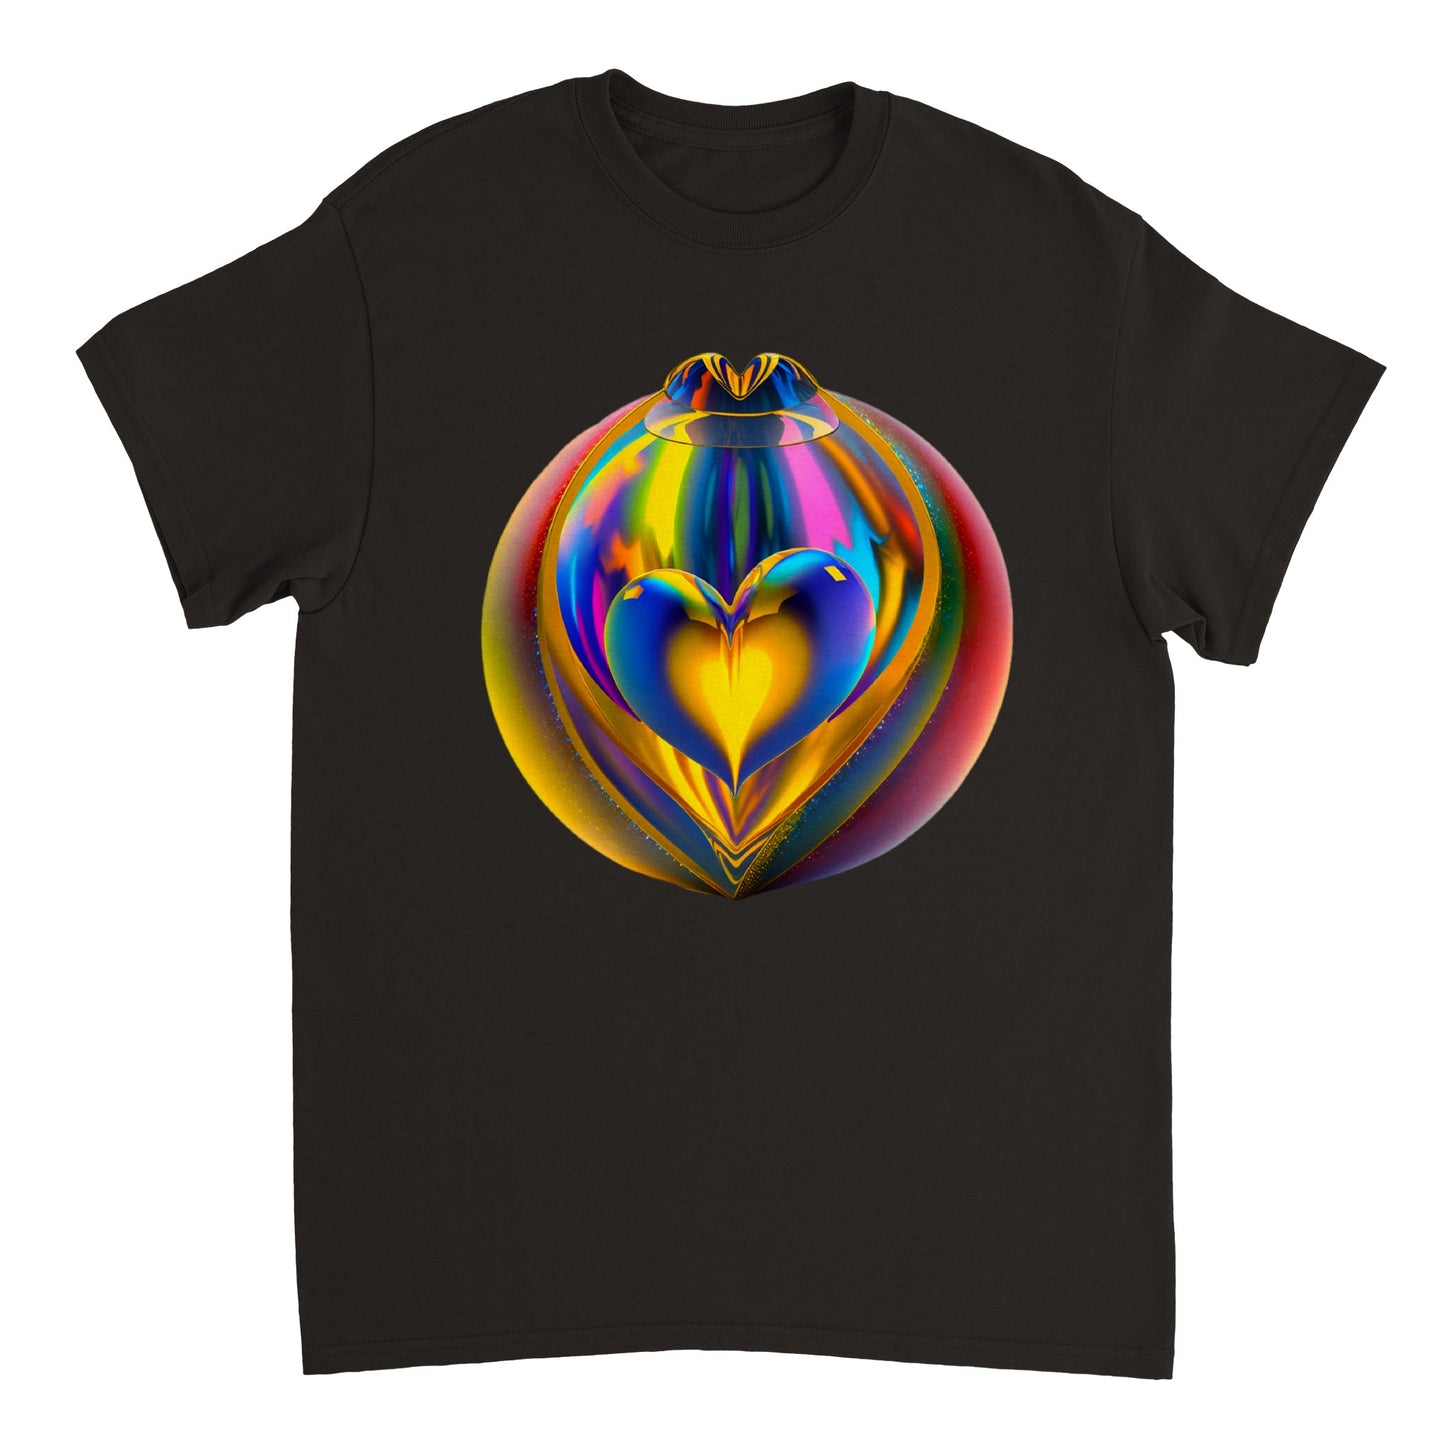 Love Heart - Heavyweight Unisex Crewneck T-shirt 40